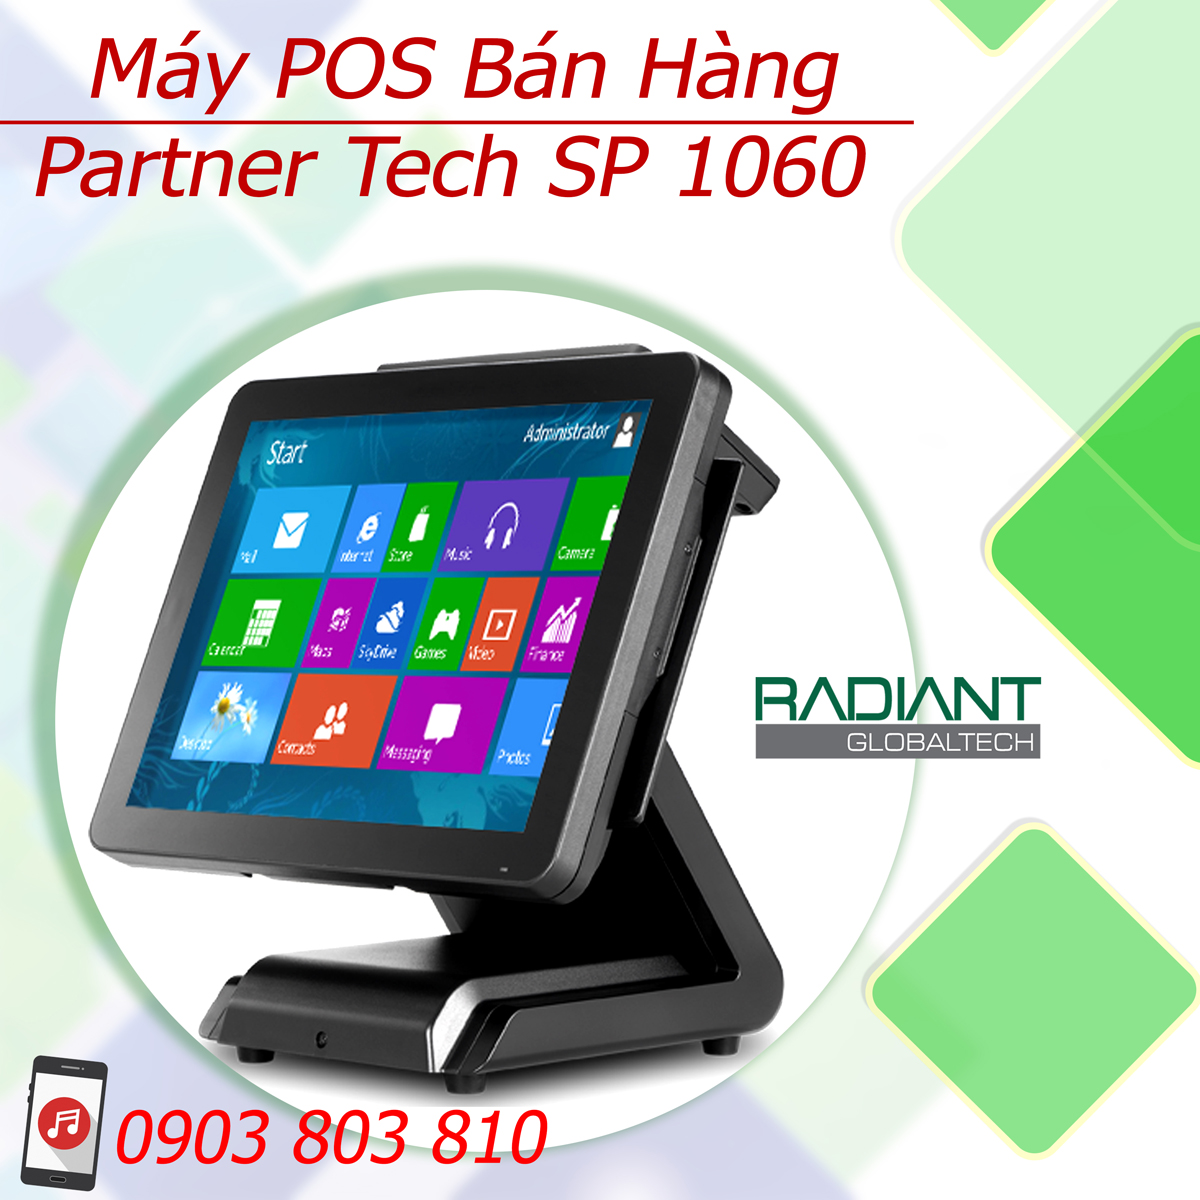 may-pos-ban-hang-partner-tech-sp-1060